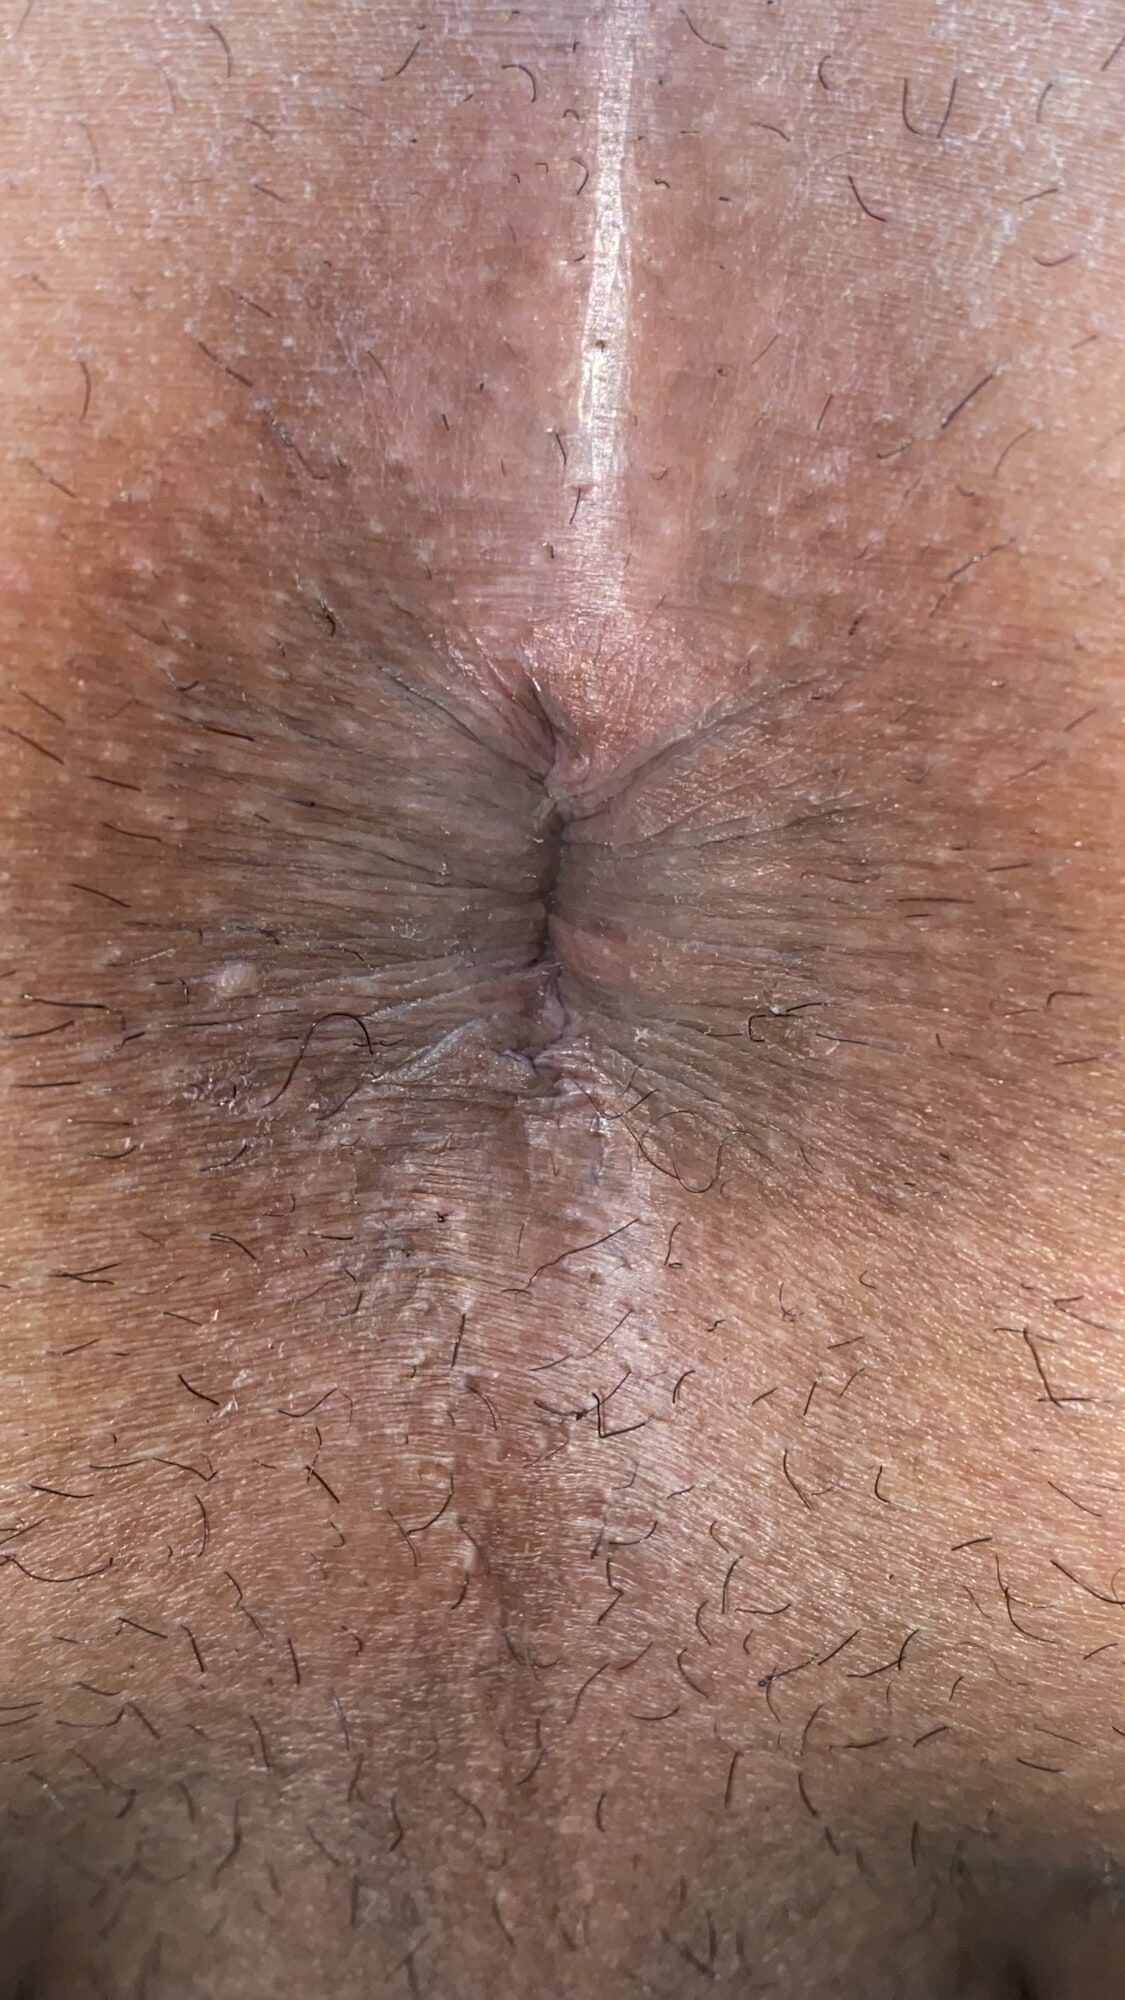 Close-up of a man's anus #36